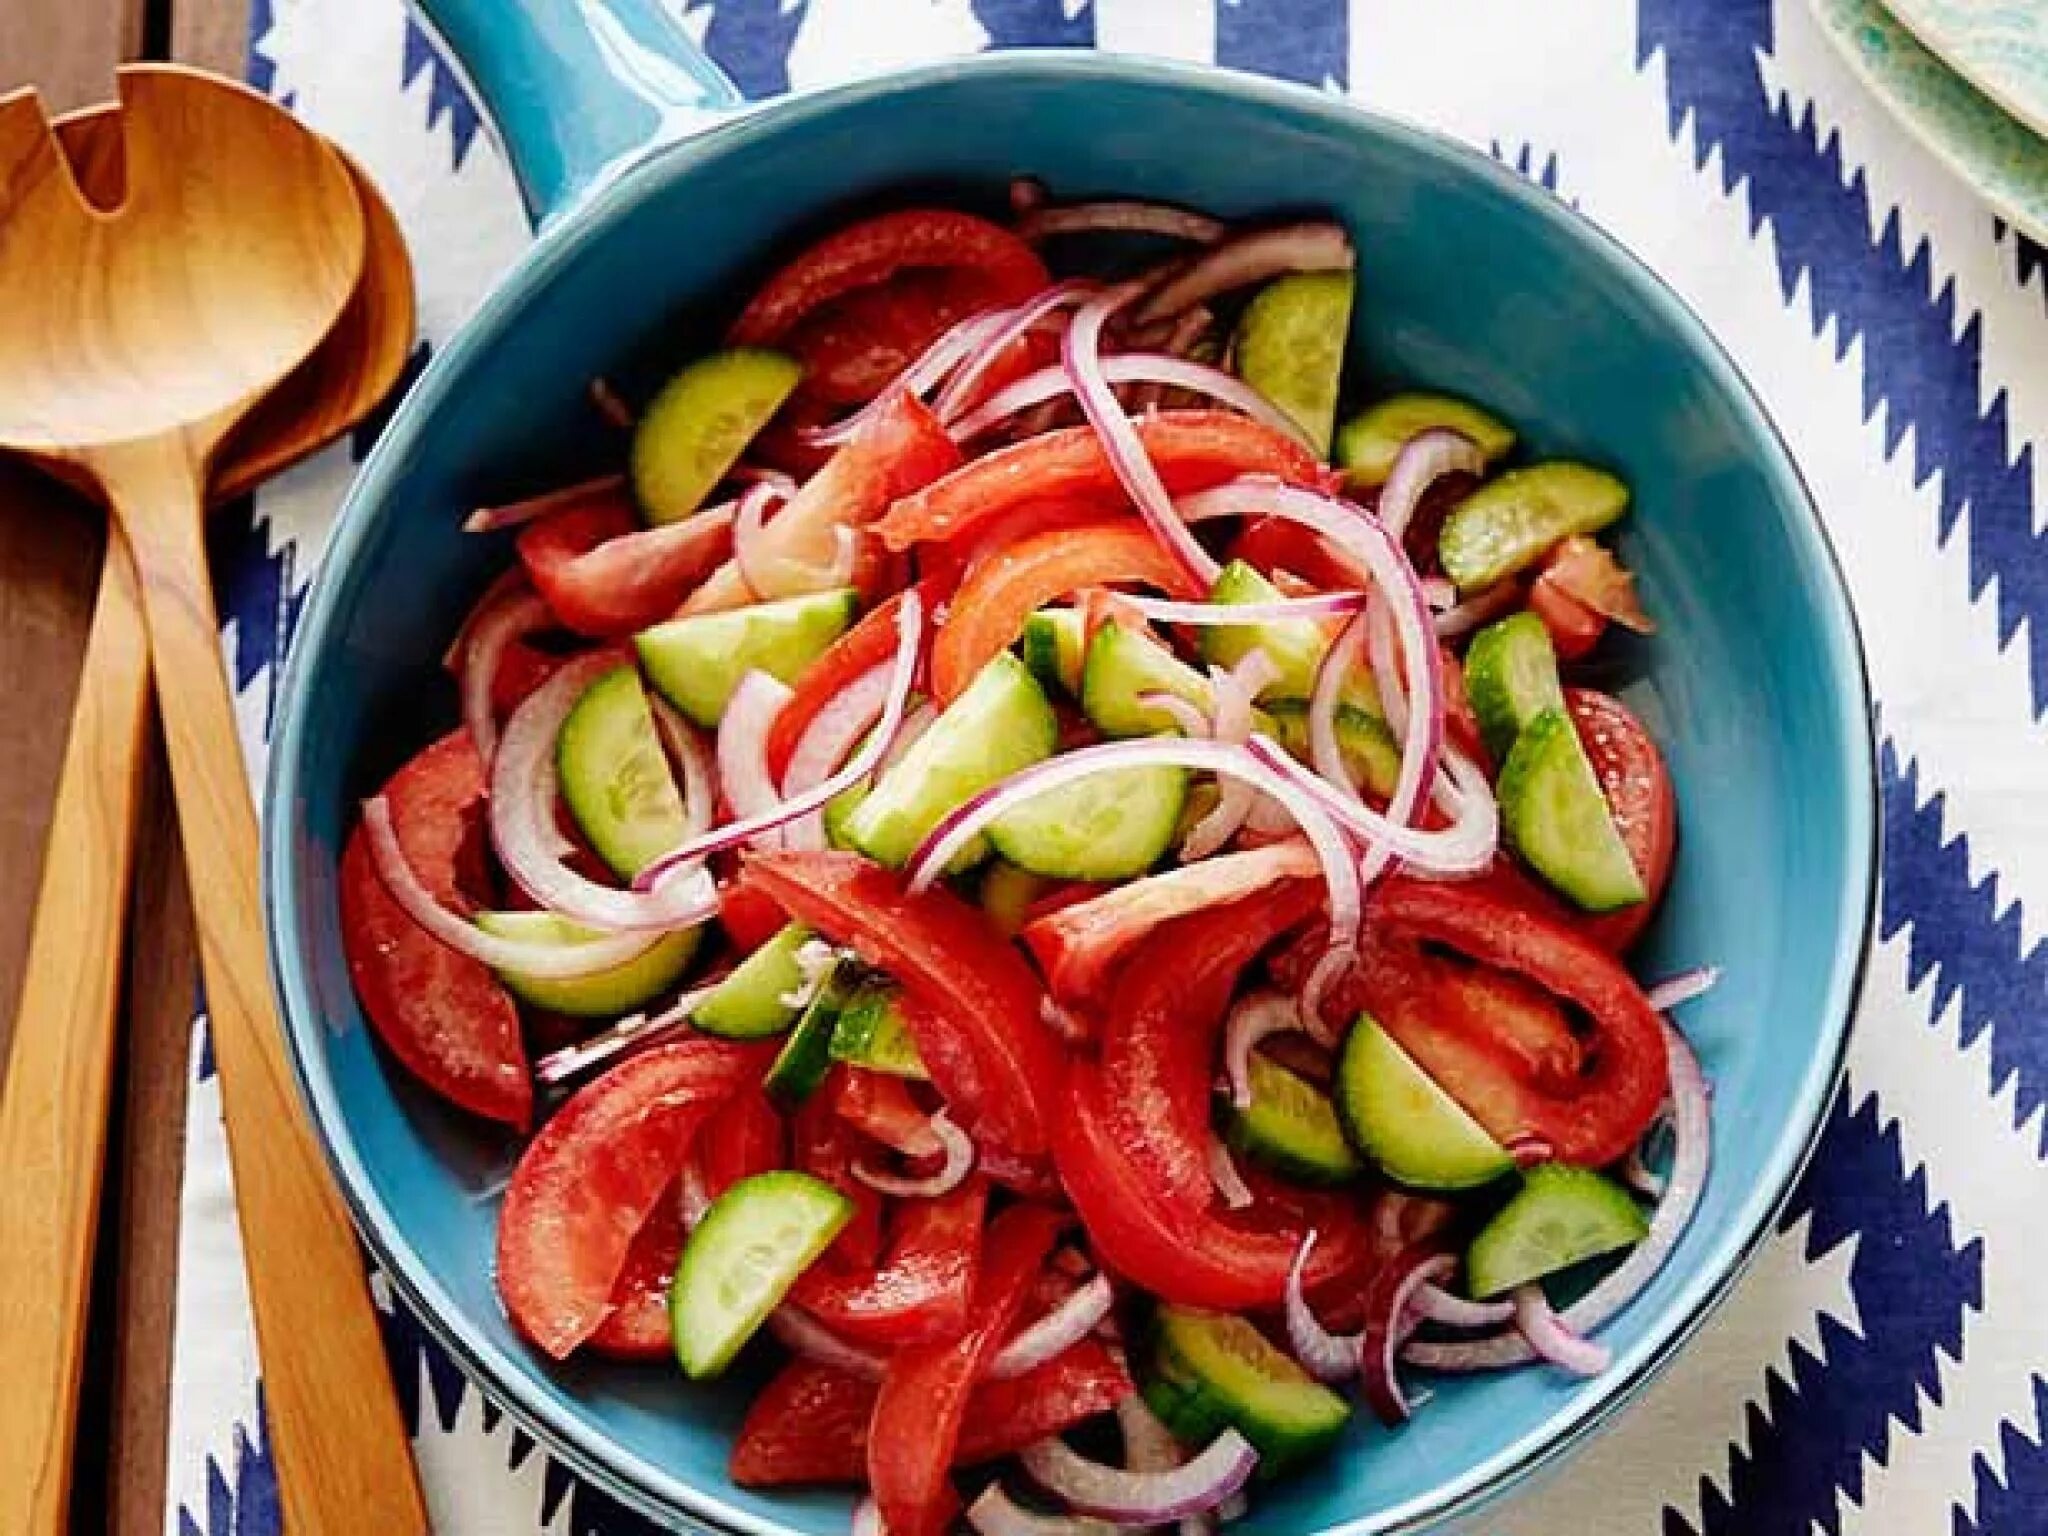 Tomato and onion and. Салат огурцы помидоры лук. Салатик с помидором огурцом и луком. Овощной салат из огурцов и помидоров.